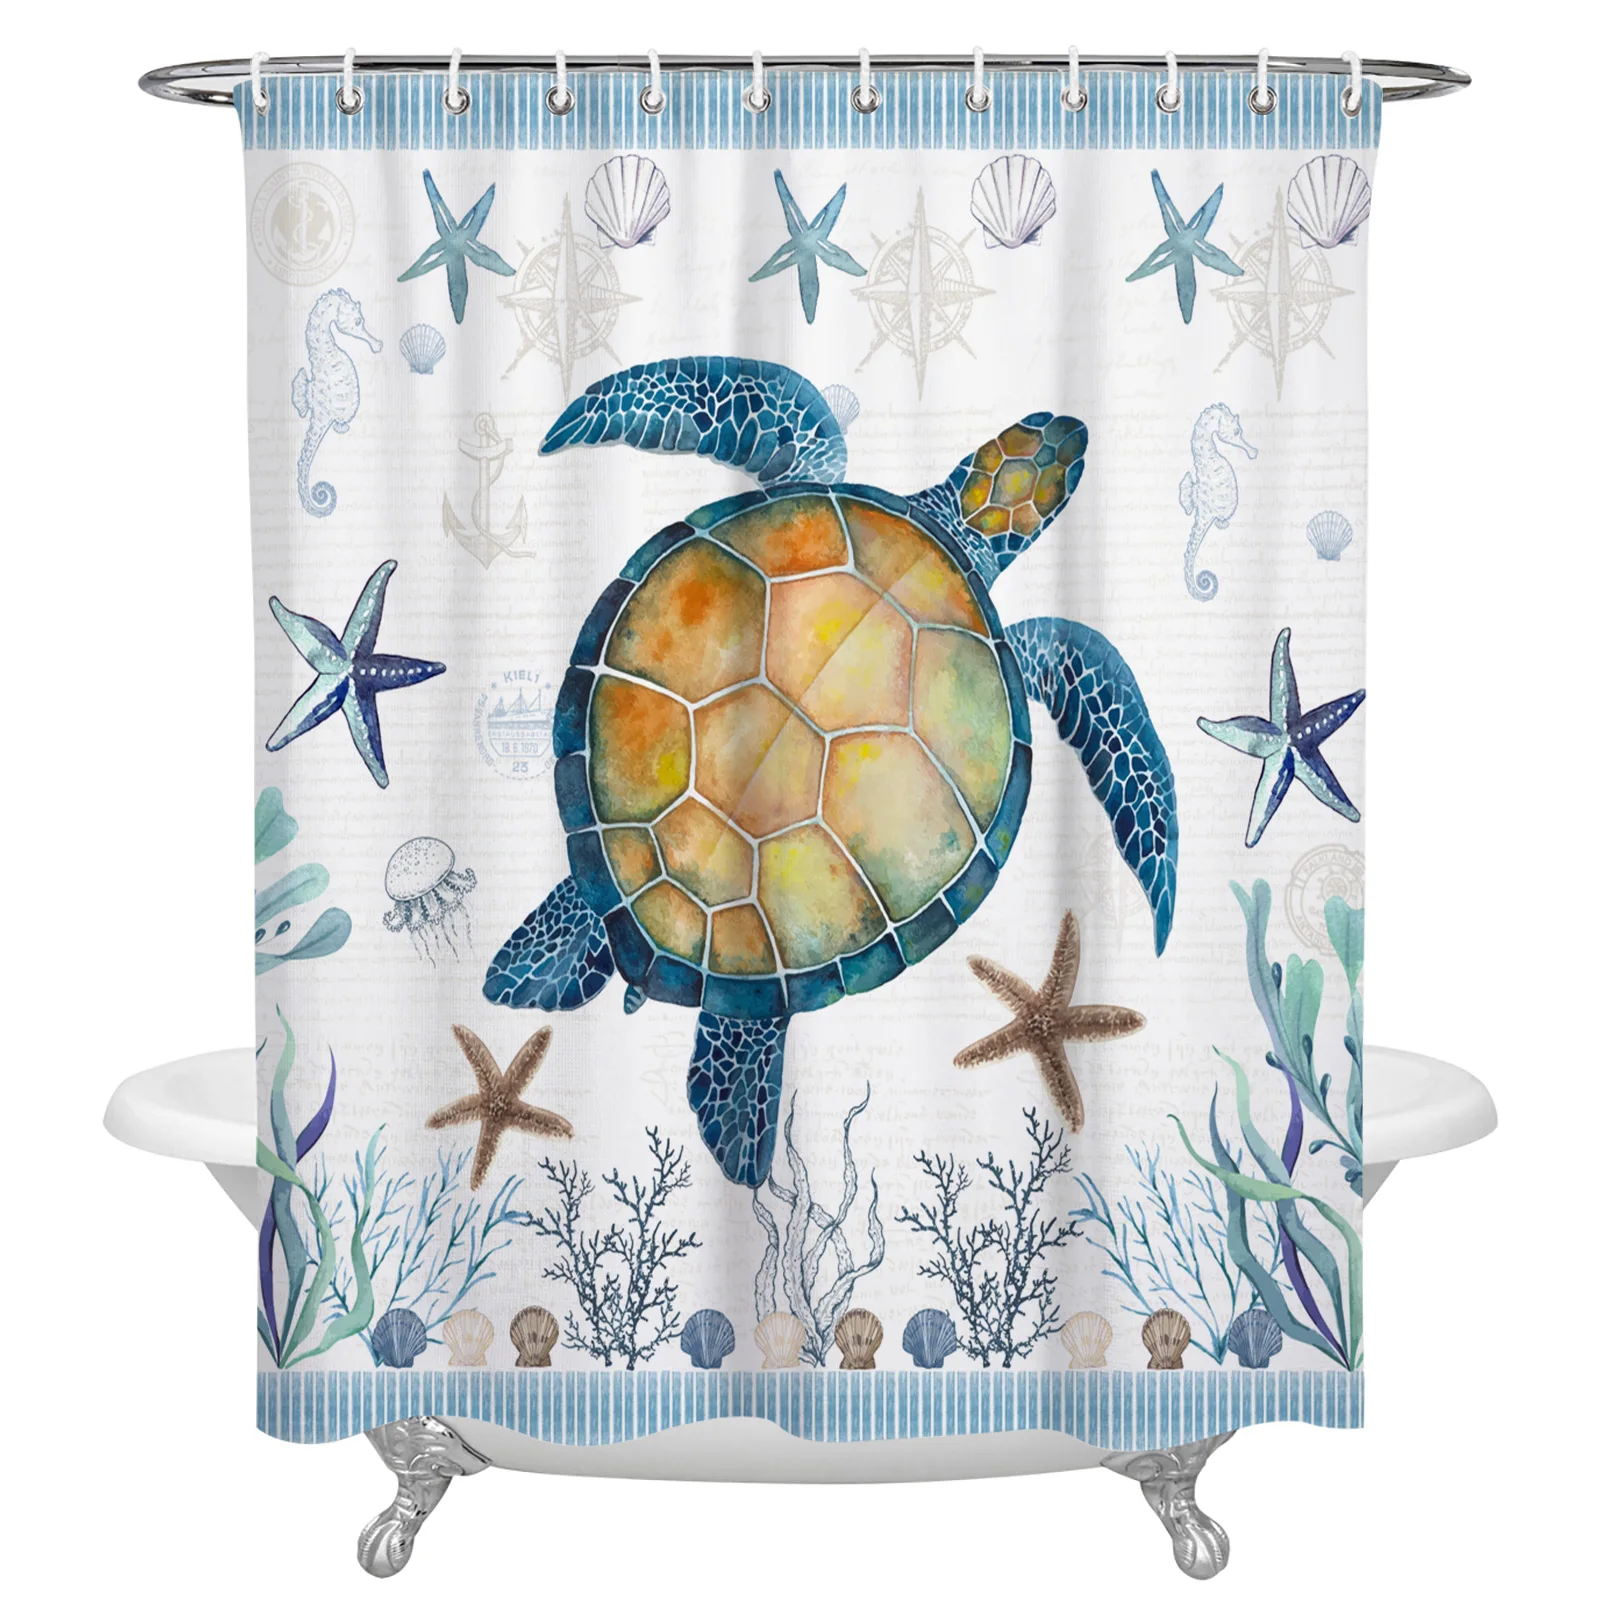 

Морская черепаха, синяя Морская звезда, ракушка, душевая занавеска s, водонепроницаемая занавеска для ванной из полиэстера, занавеска для ва...